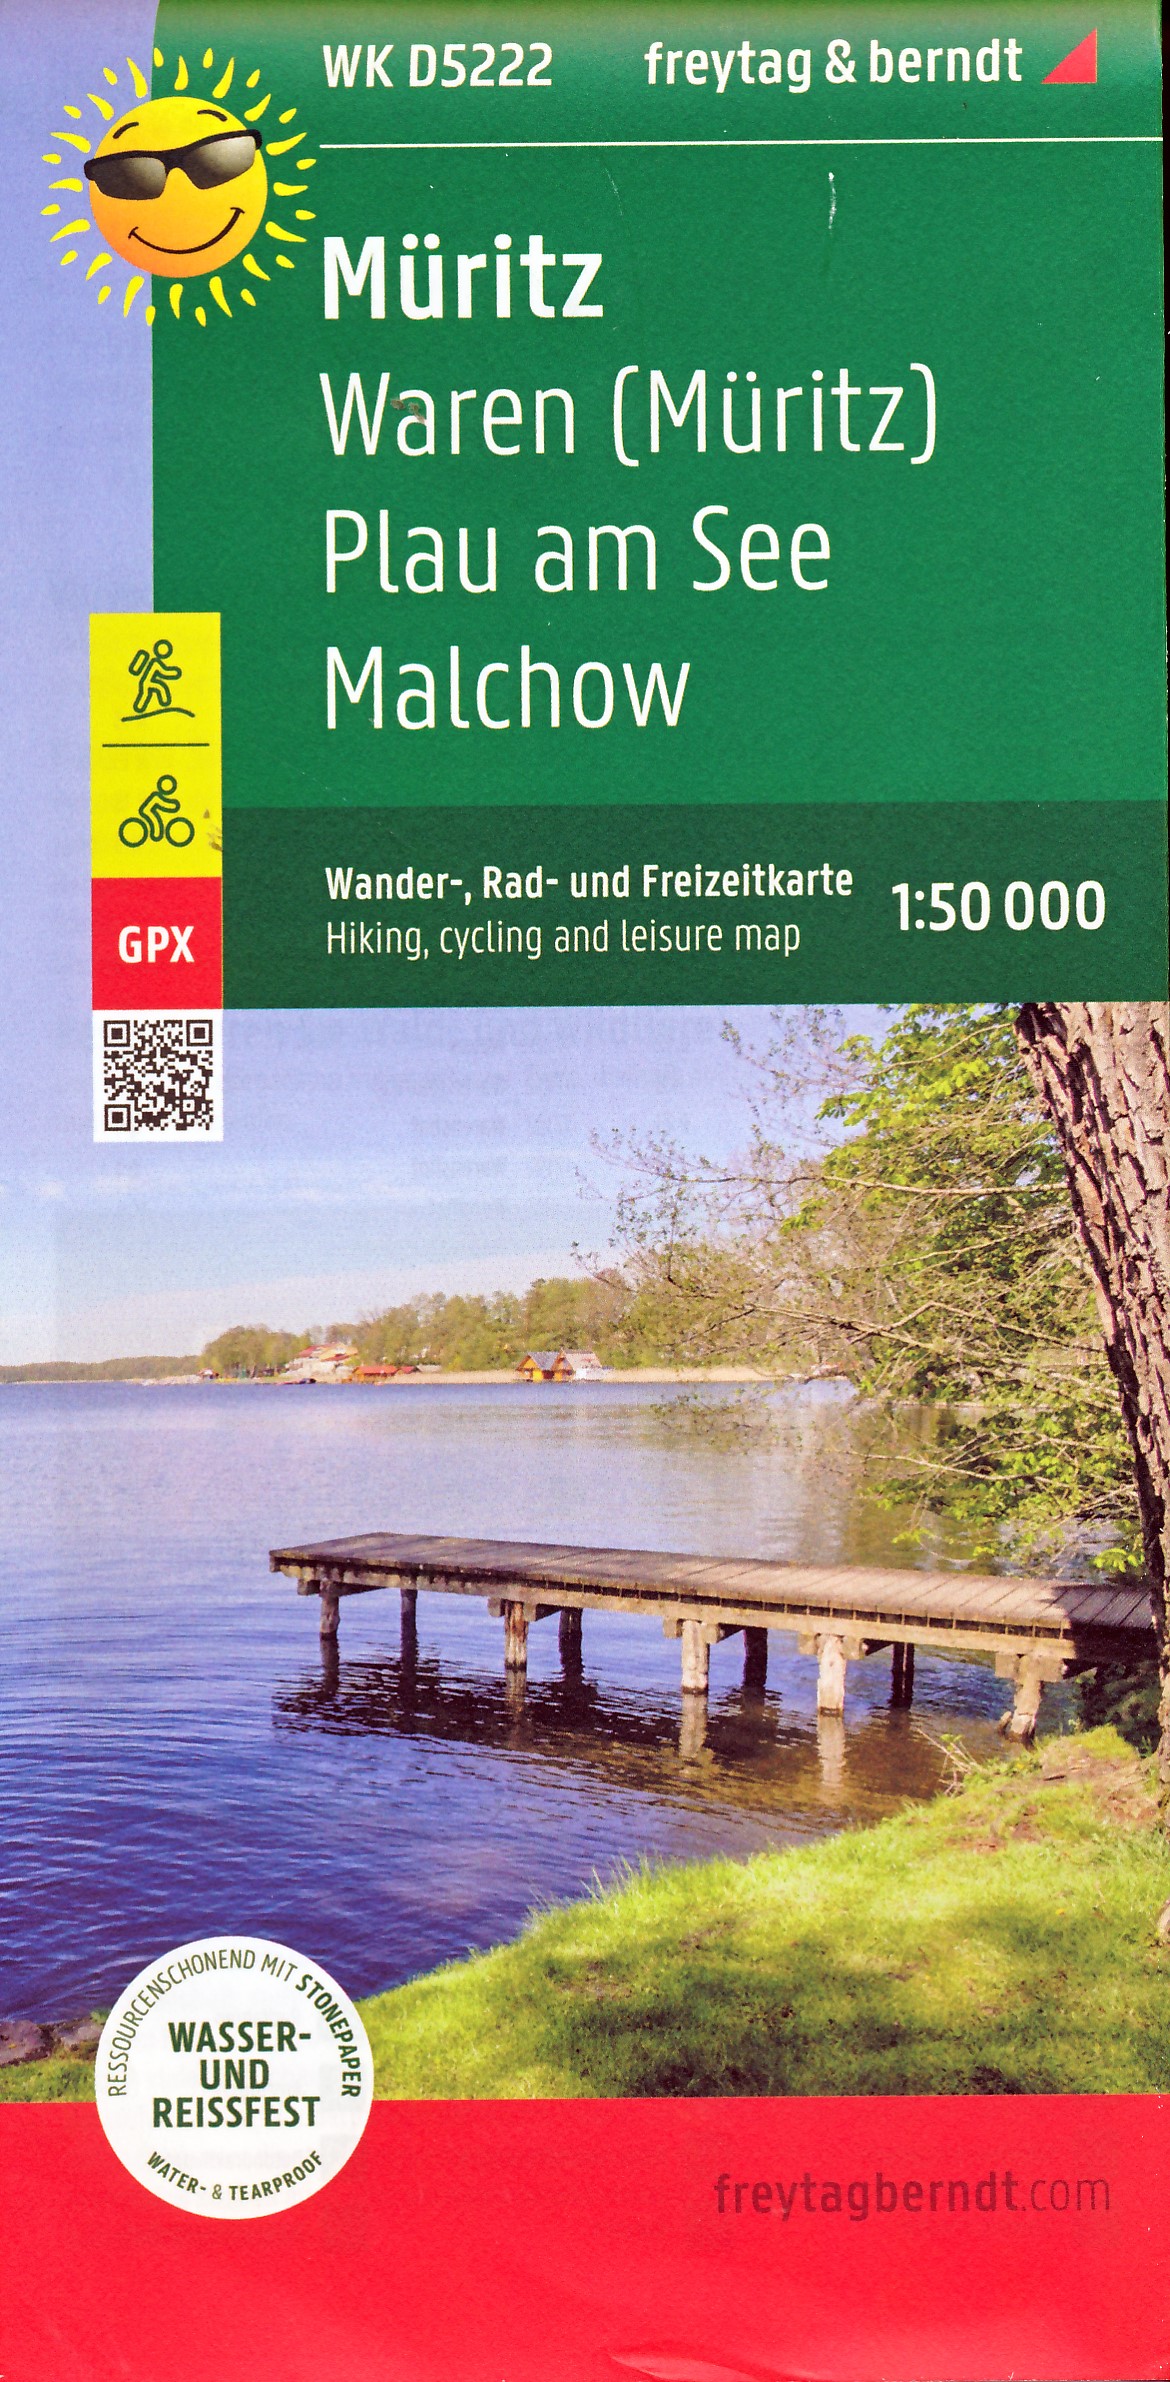 Online bestellen: Wandelkaart - Fietskaart WKD5222 Müritz | Freytag & Berndt